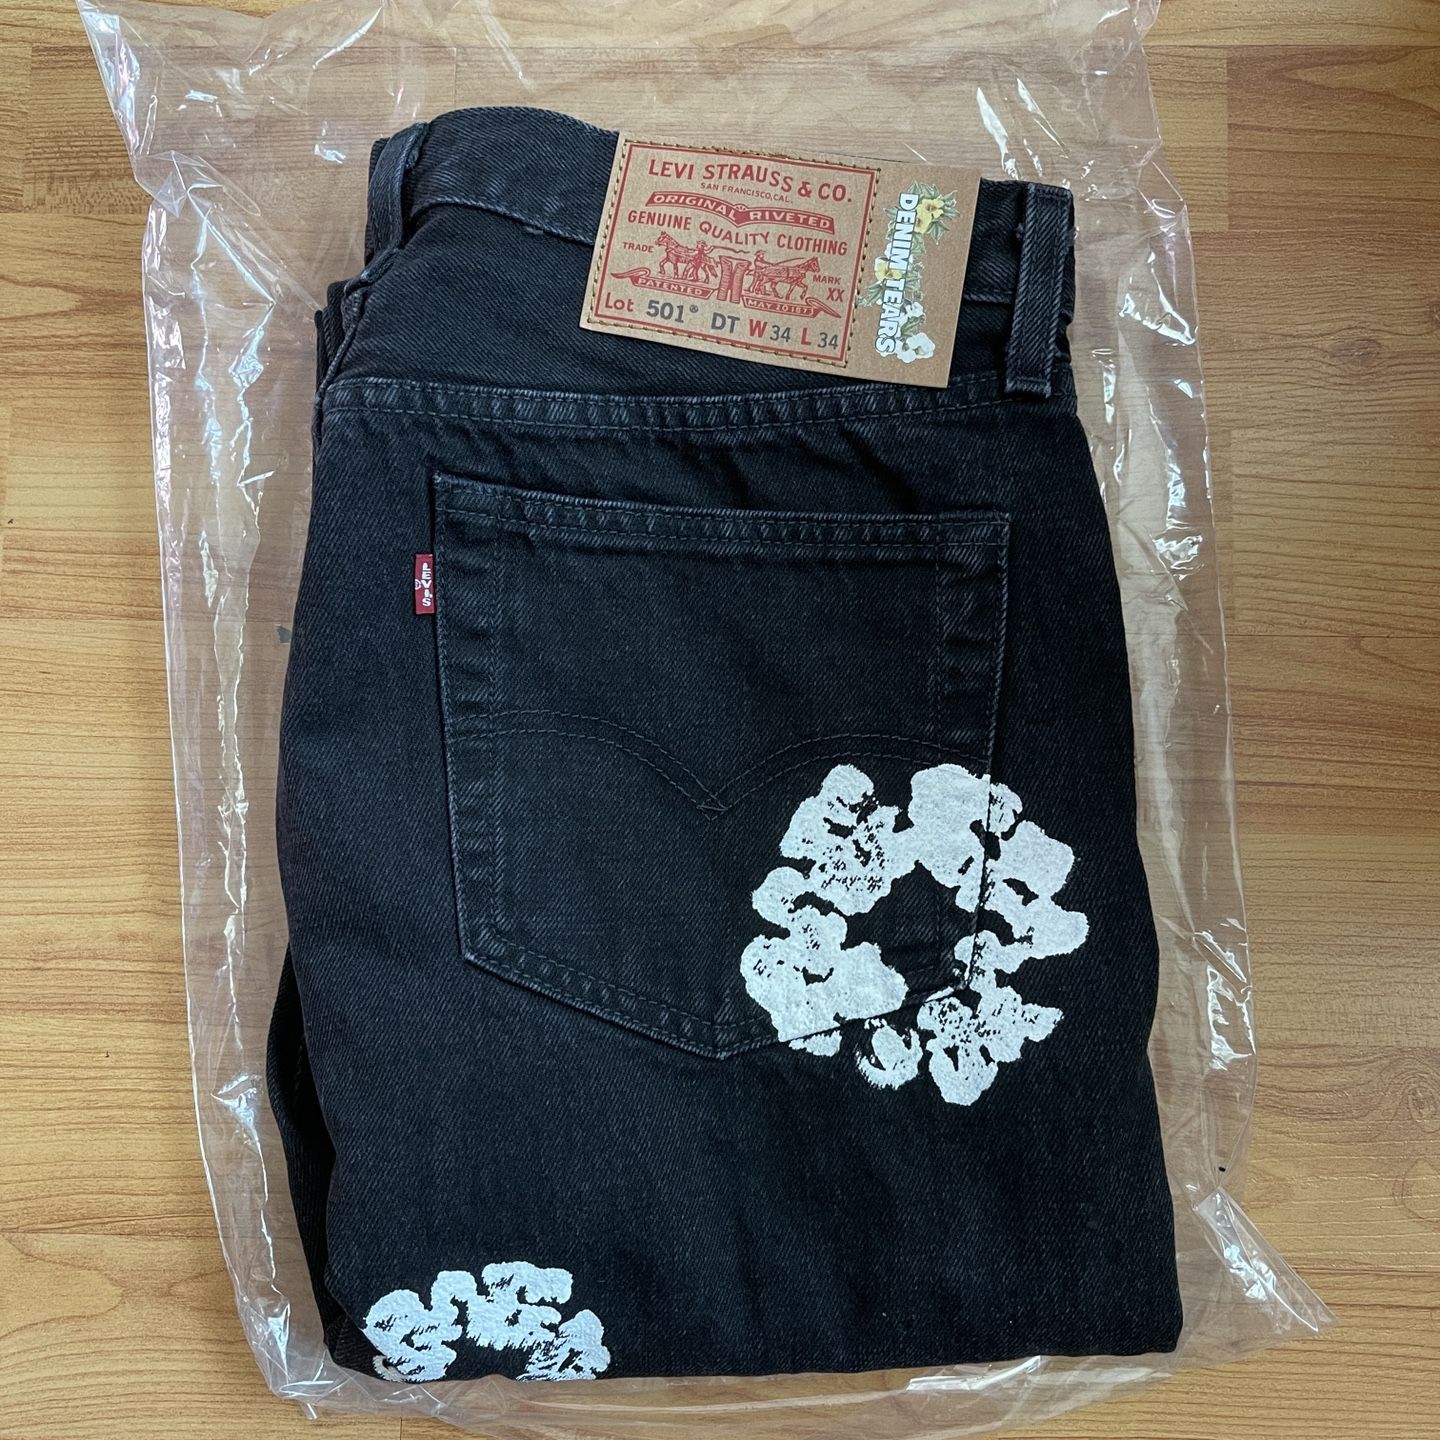 Levi's x Denim Tears Cotton Wreath Jeans Black Size 34x34 for 